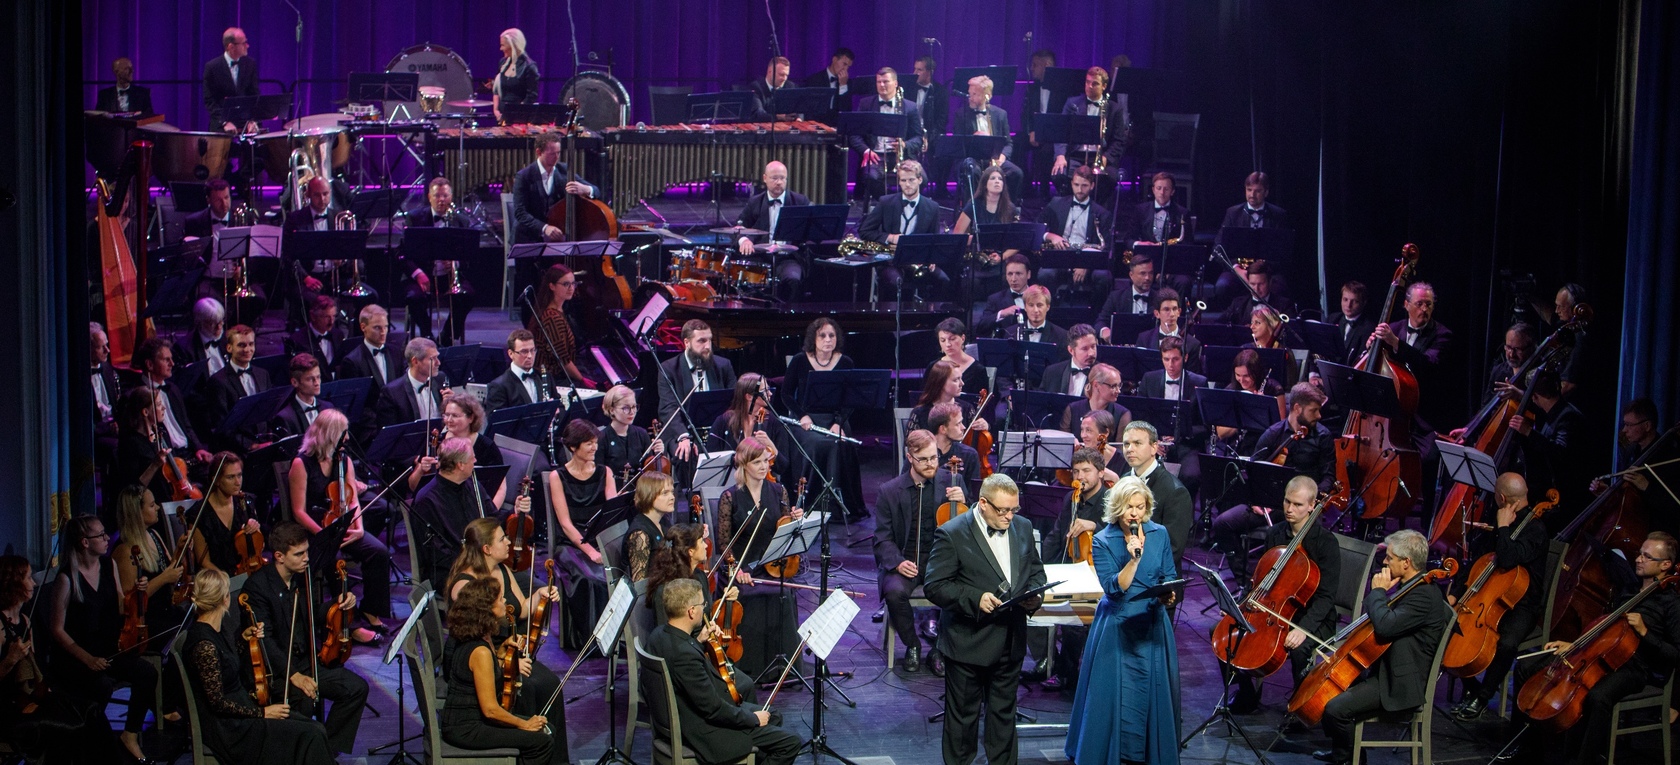 Rīgas svētkos skan koncertprogramma “Simtgades skaņas”